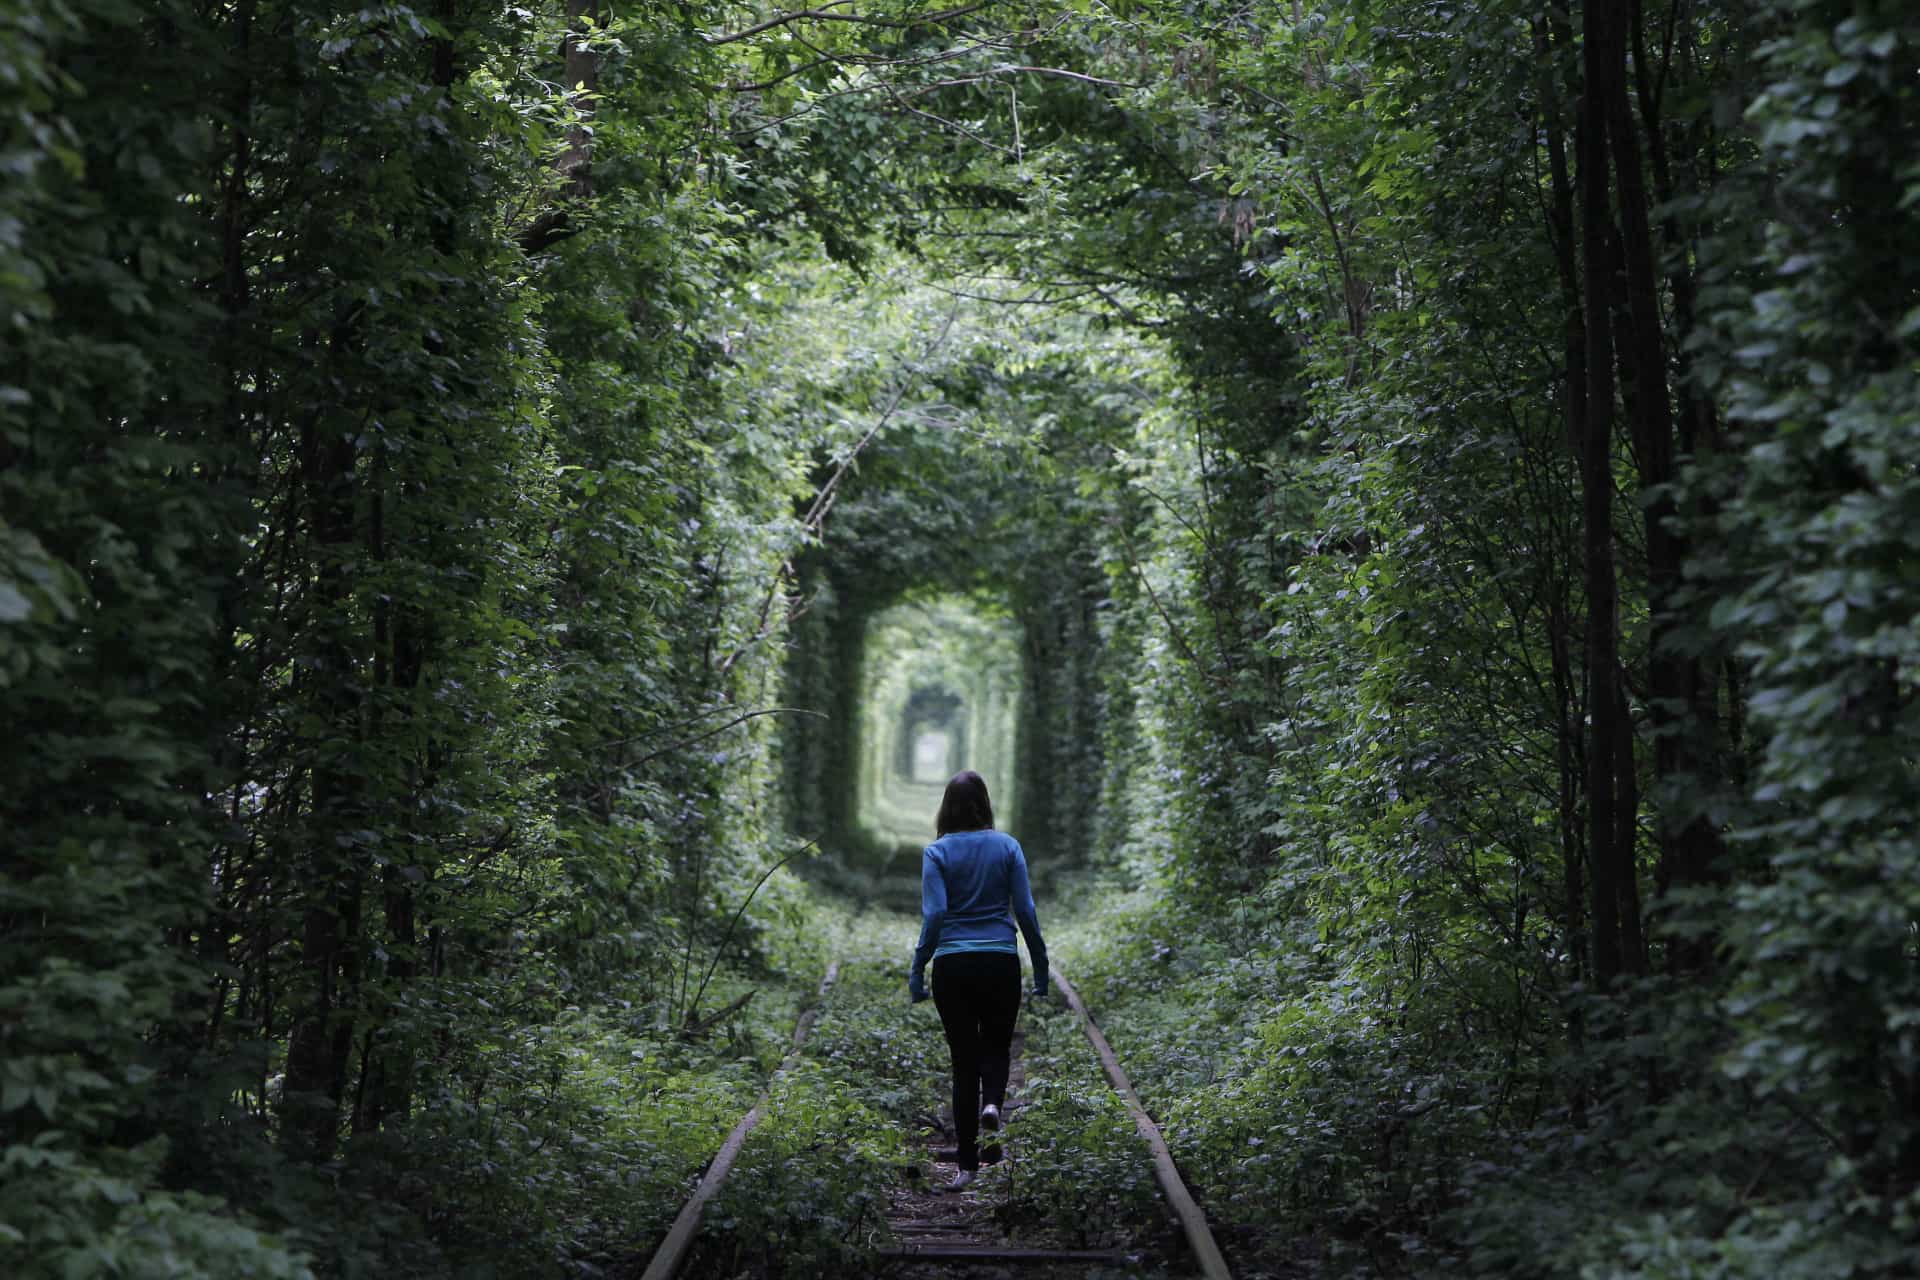 Dans la petite ville de Kleven, une jeune fille marche sur la voie ferrée abandonnée, dans un lieu connu comme le "Tunnel de l'amour".